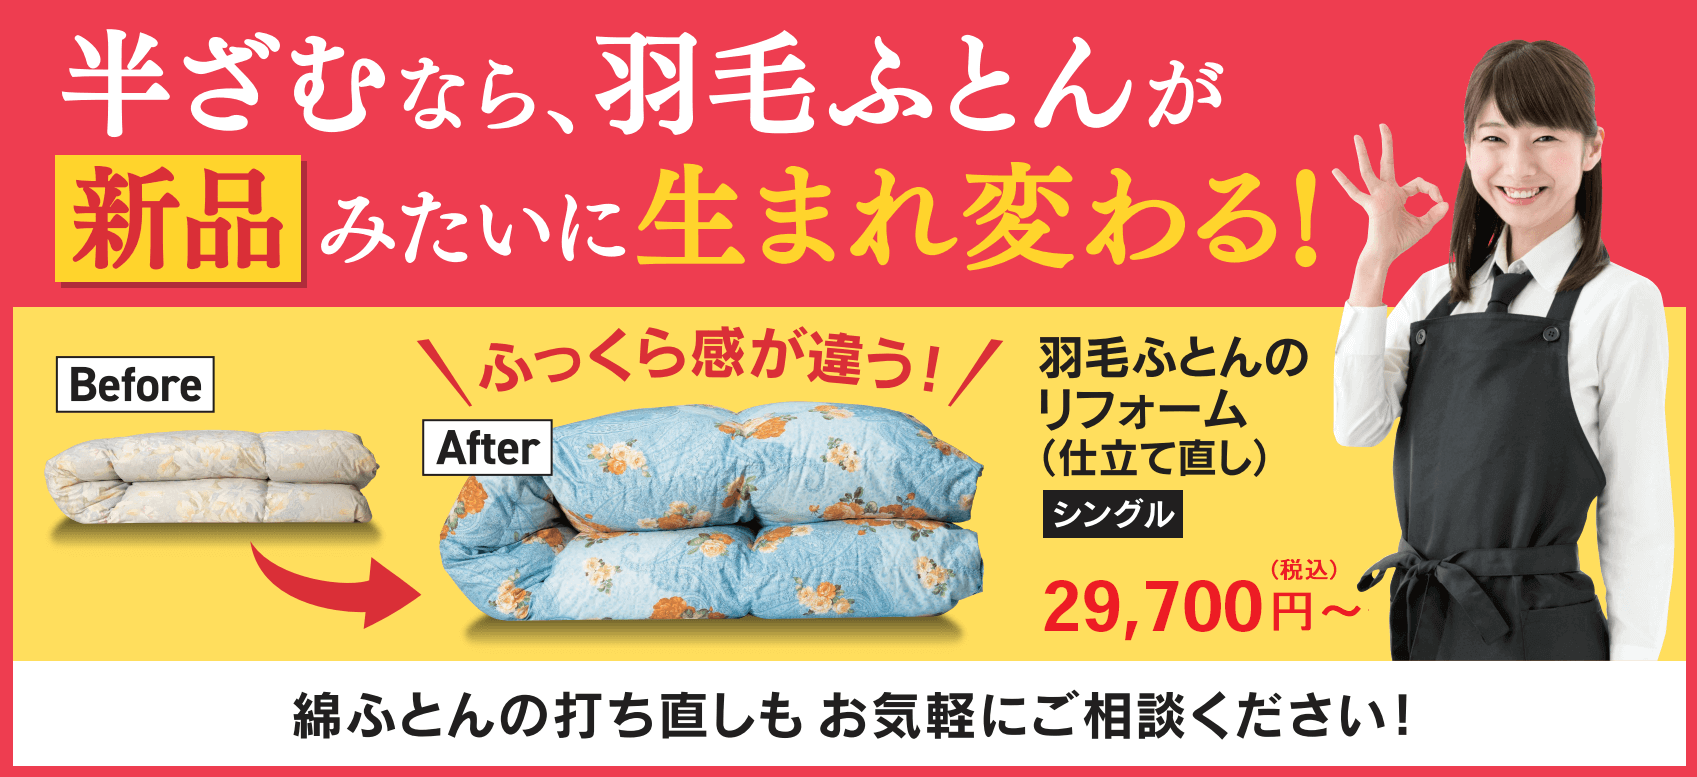 羽毛布団のリフォーム | 神奈川県川崎市多摩区の寝具店半ざむ